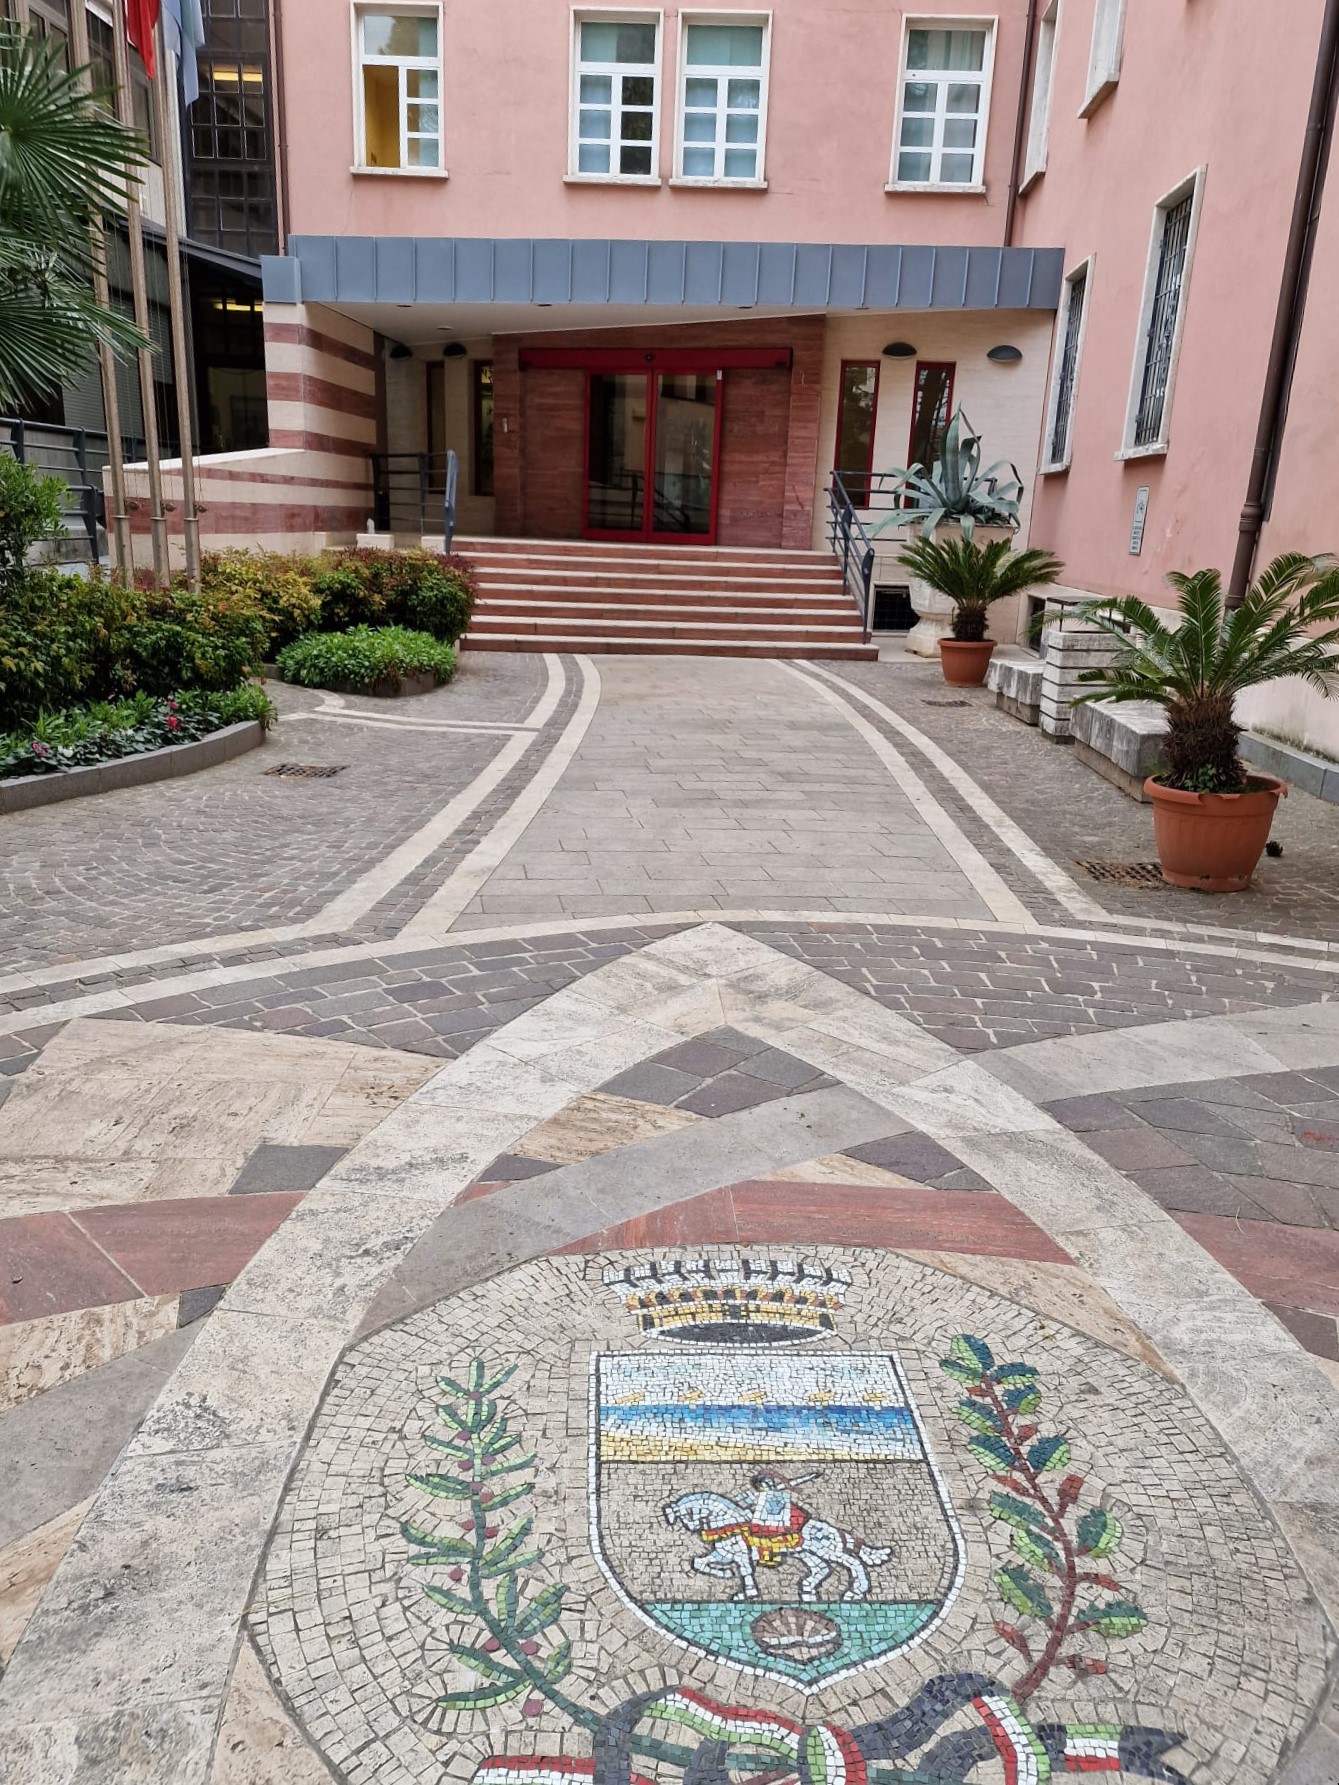 Comune di Riccione - ingresso principale